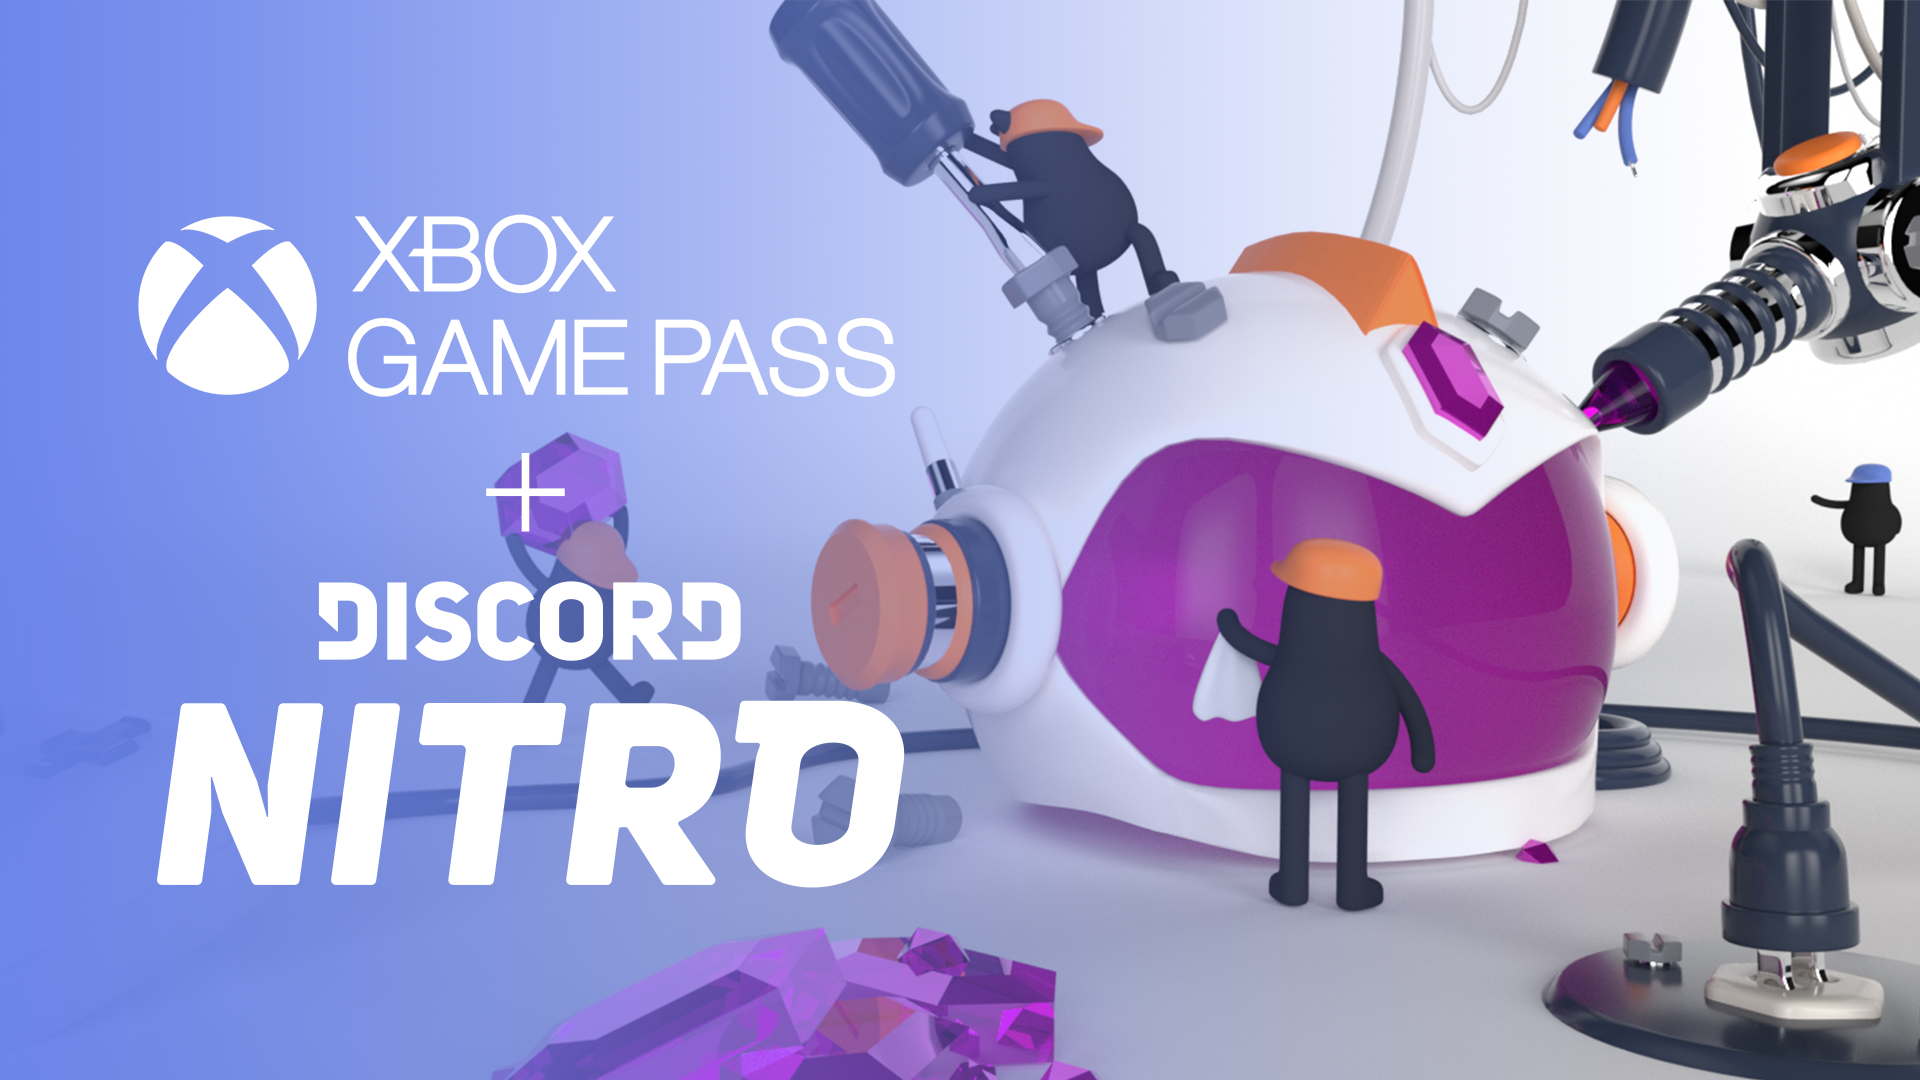 xbox game pass how to claim discord nitro